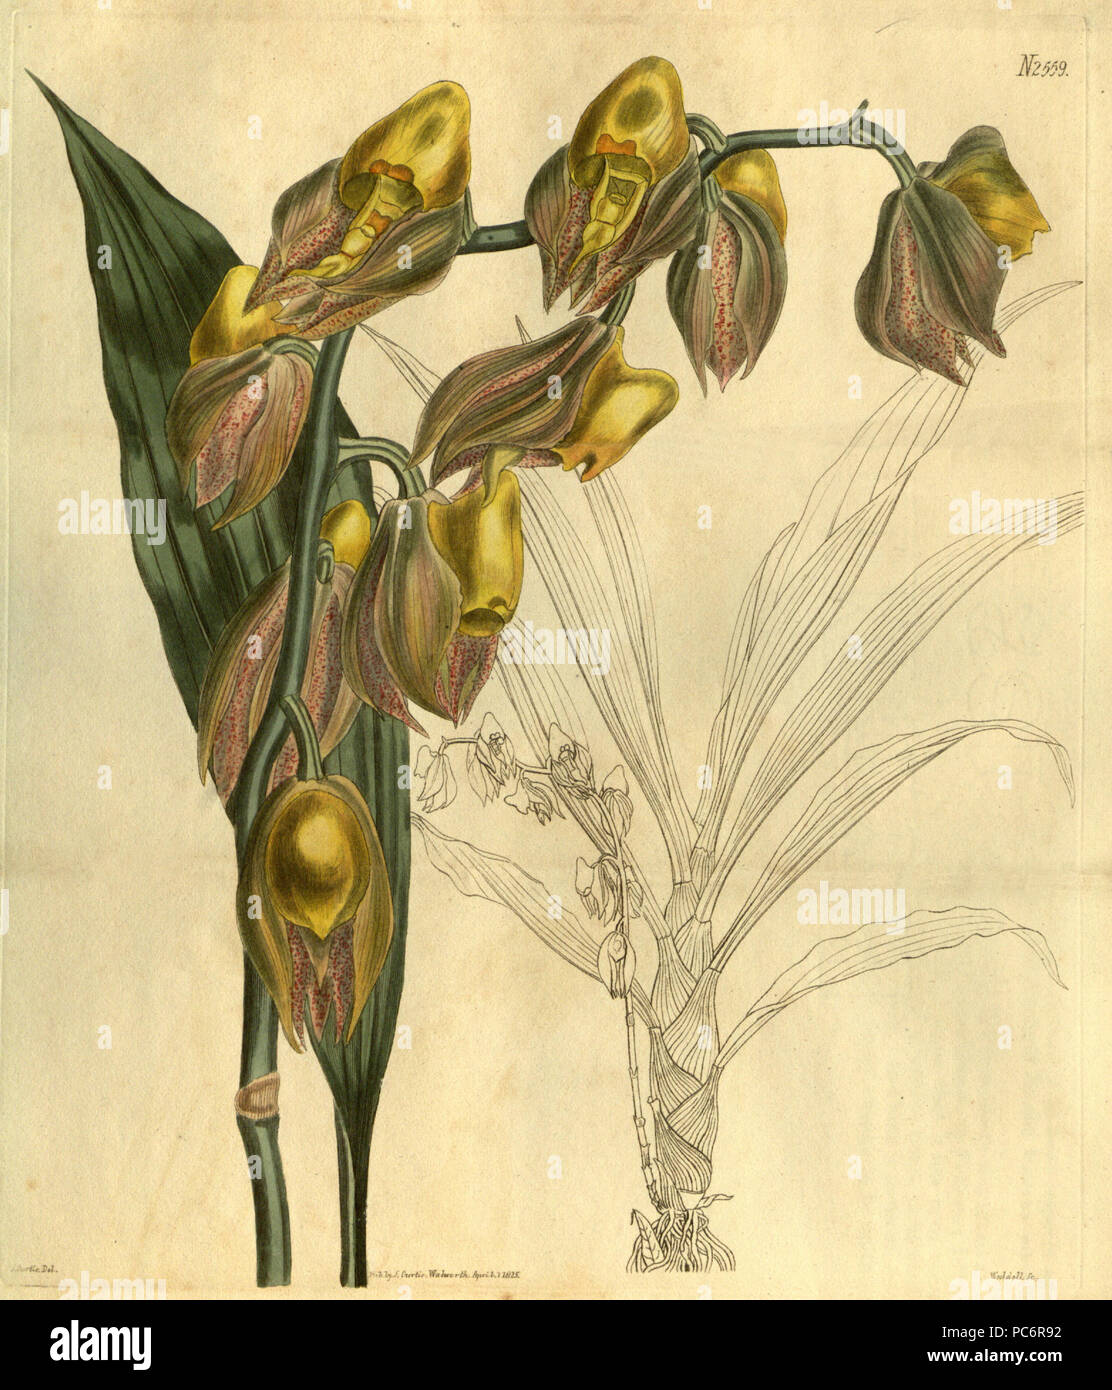 118 Catasetum macrocarpum (as C. tridentatum) - Curtis vol. 52 pl. 2559 (1825) Stock Photo